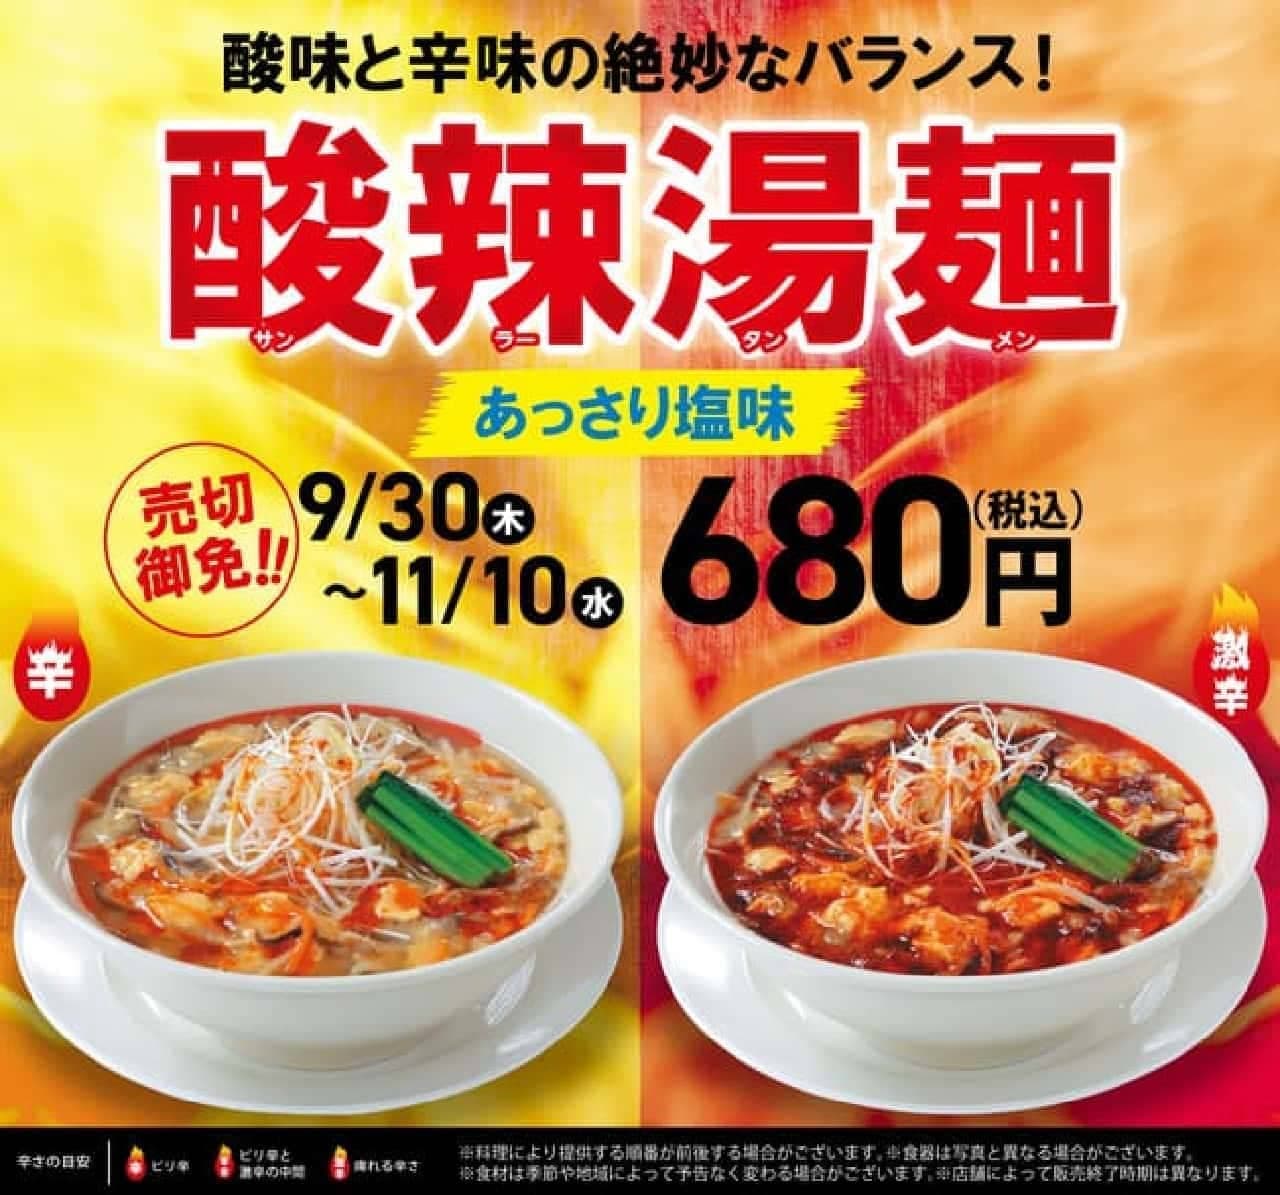 Kourakuen Hot and sour soup noodles (Sanrattanmen)